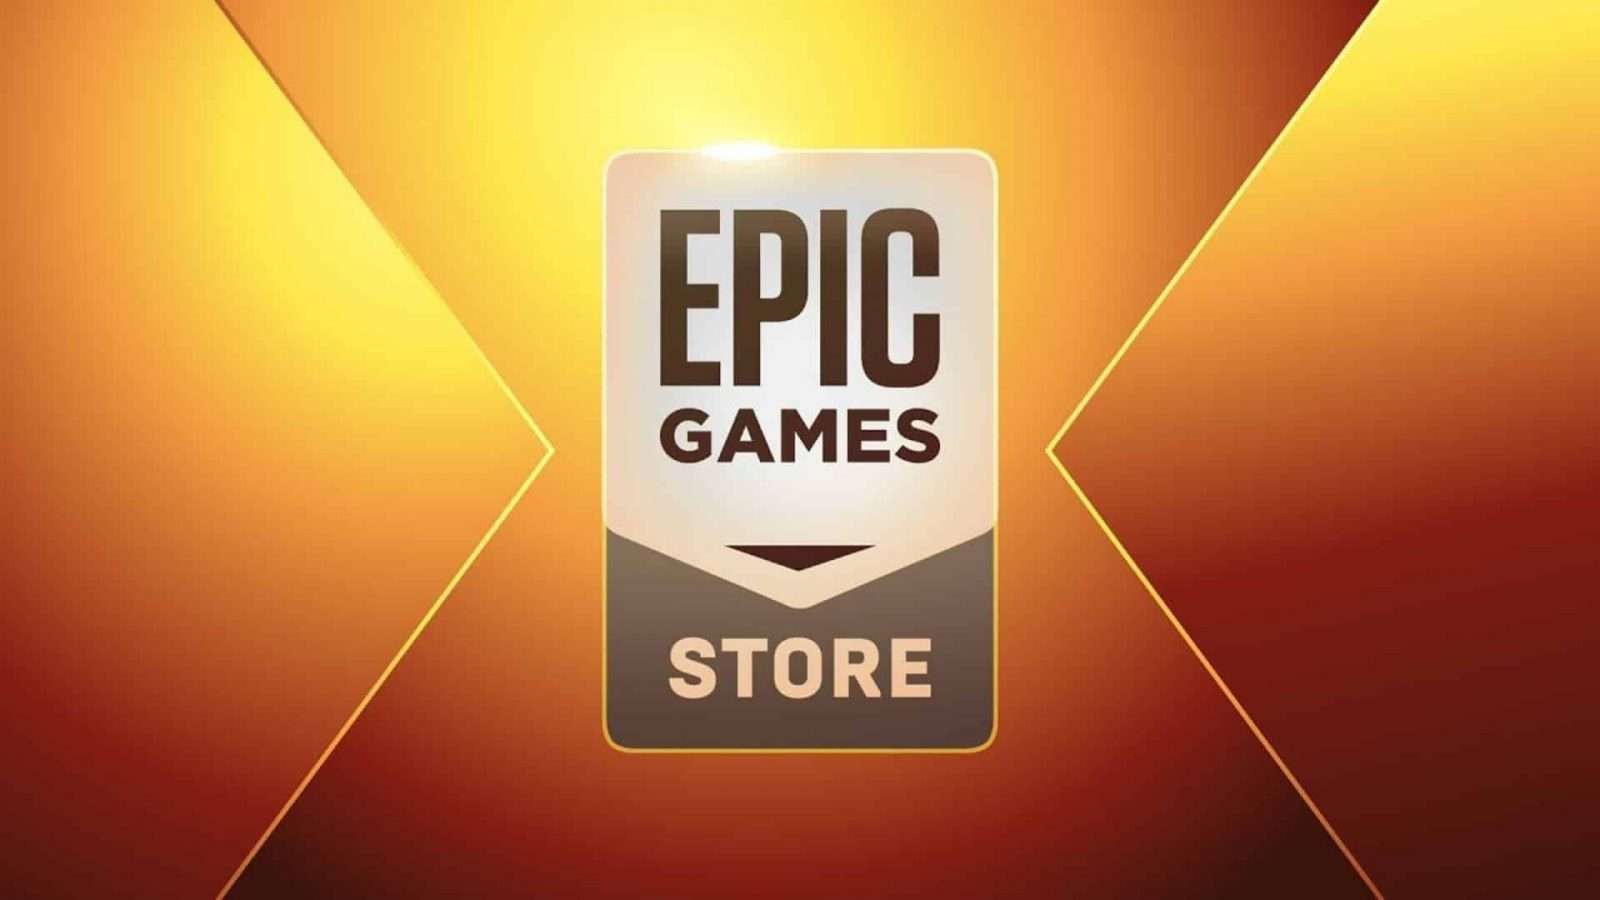 epic games free gae of the week